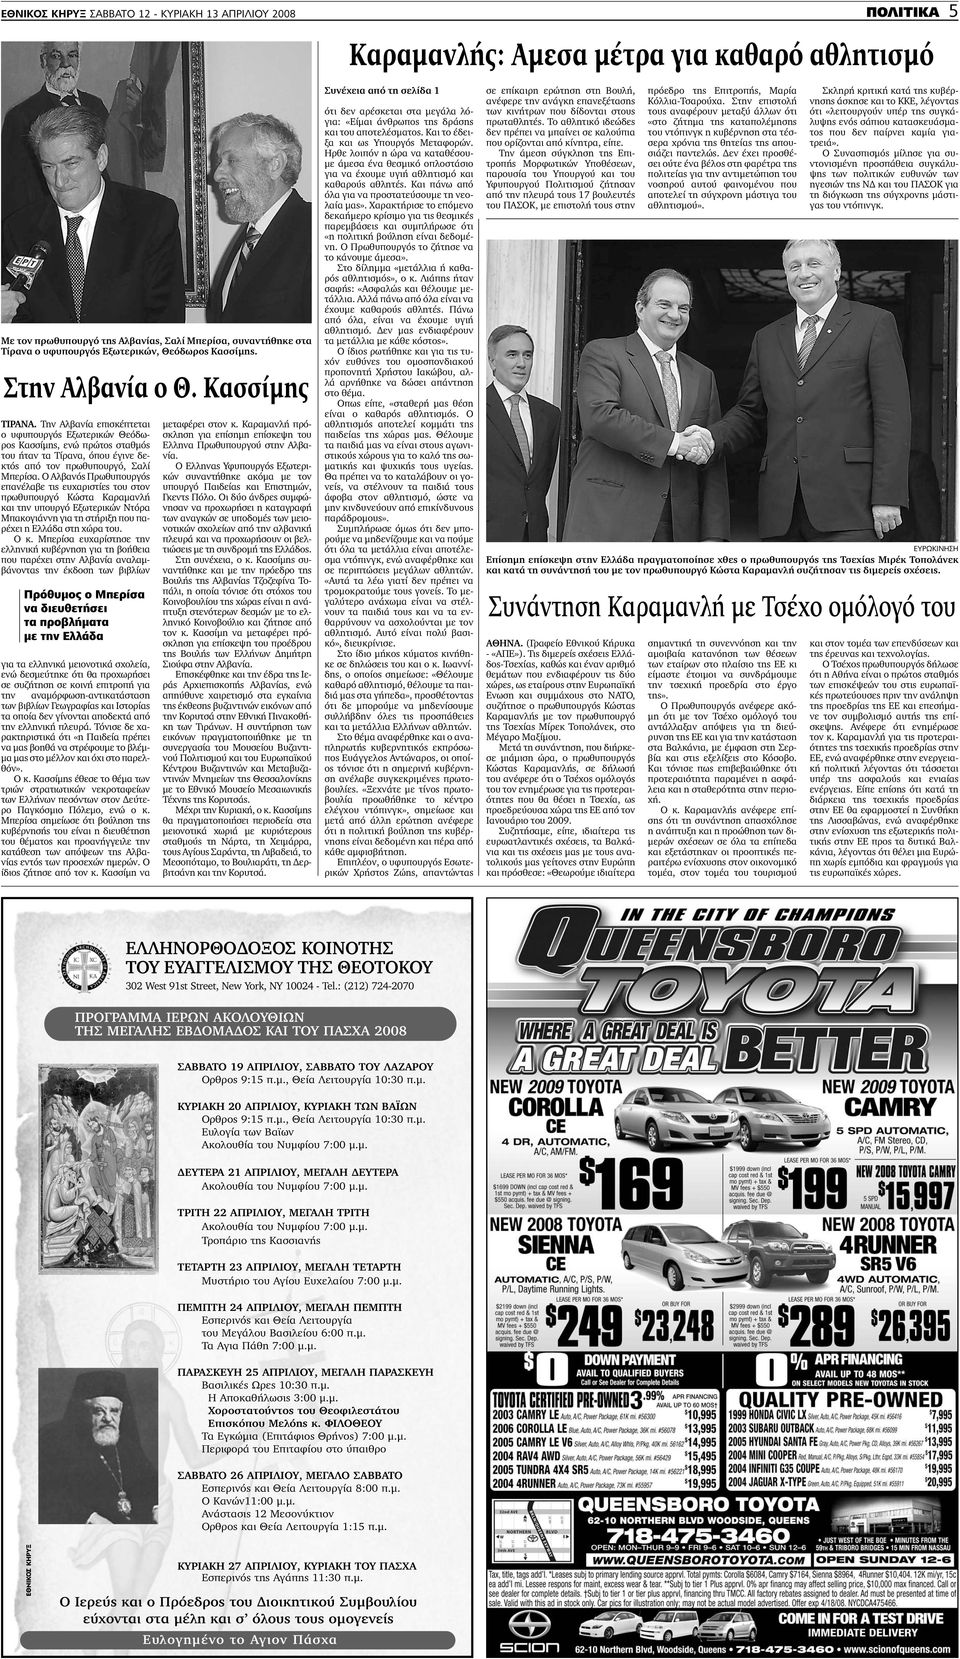 Την Αλβανία επισκέπτεται ο υφυπουργός Εξωτερικών Θεόδωρος Κασσίµης, ενώ πρώτος σταθµός του ήταν τα Τίρανα, όπου έγινε δεκτός από τον πρωθυπουργό, Σαλί Μπερίσα.